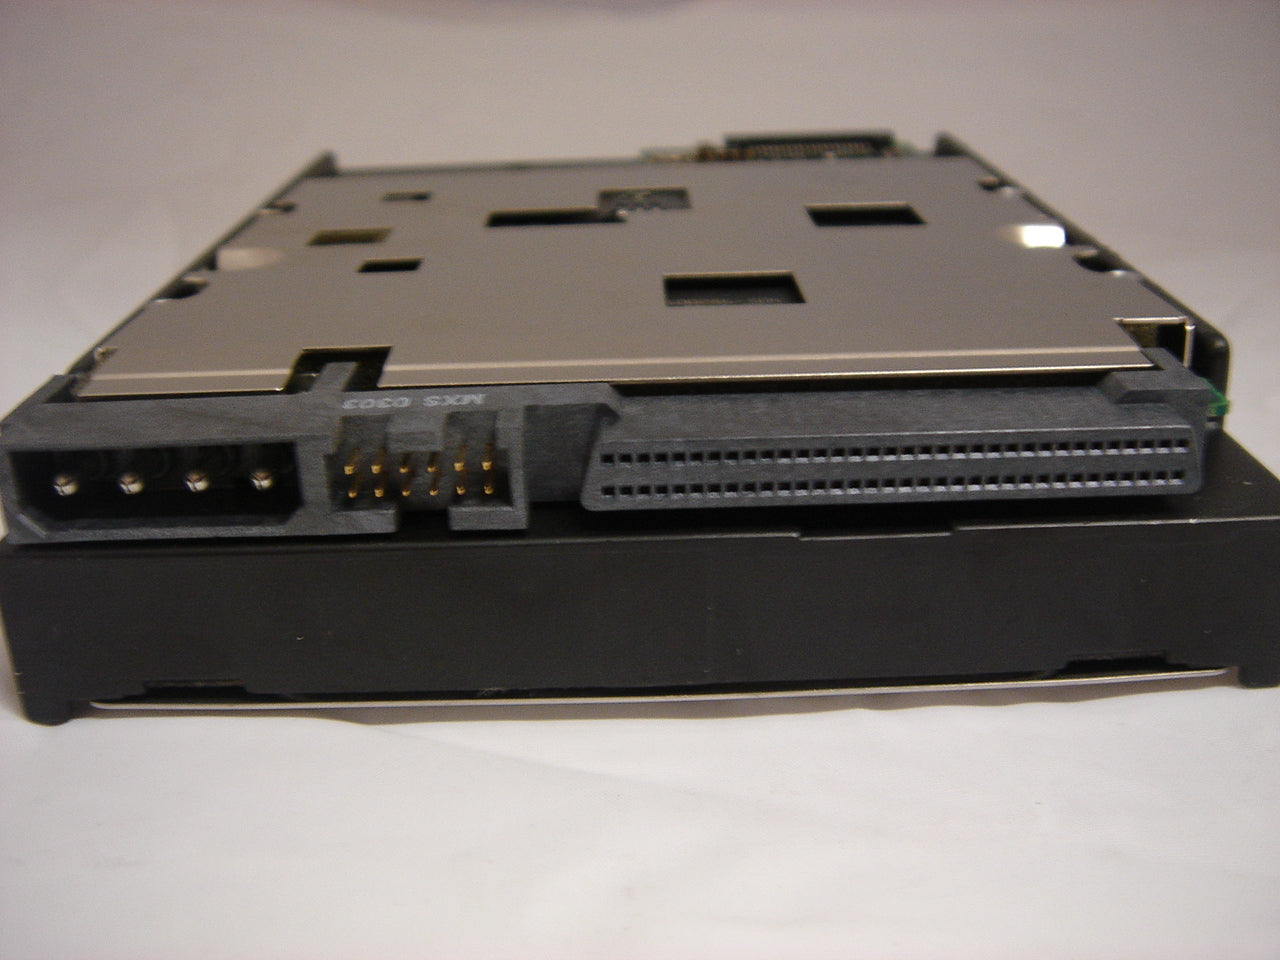 MC5471_9W8005-001_Seagate 18.4GB SCSI 68 Pin 7200rpm 3.5in HDD - Image3